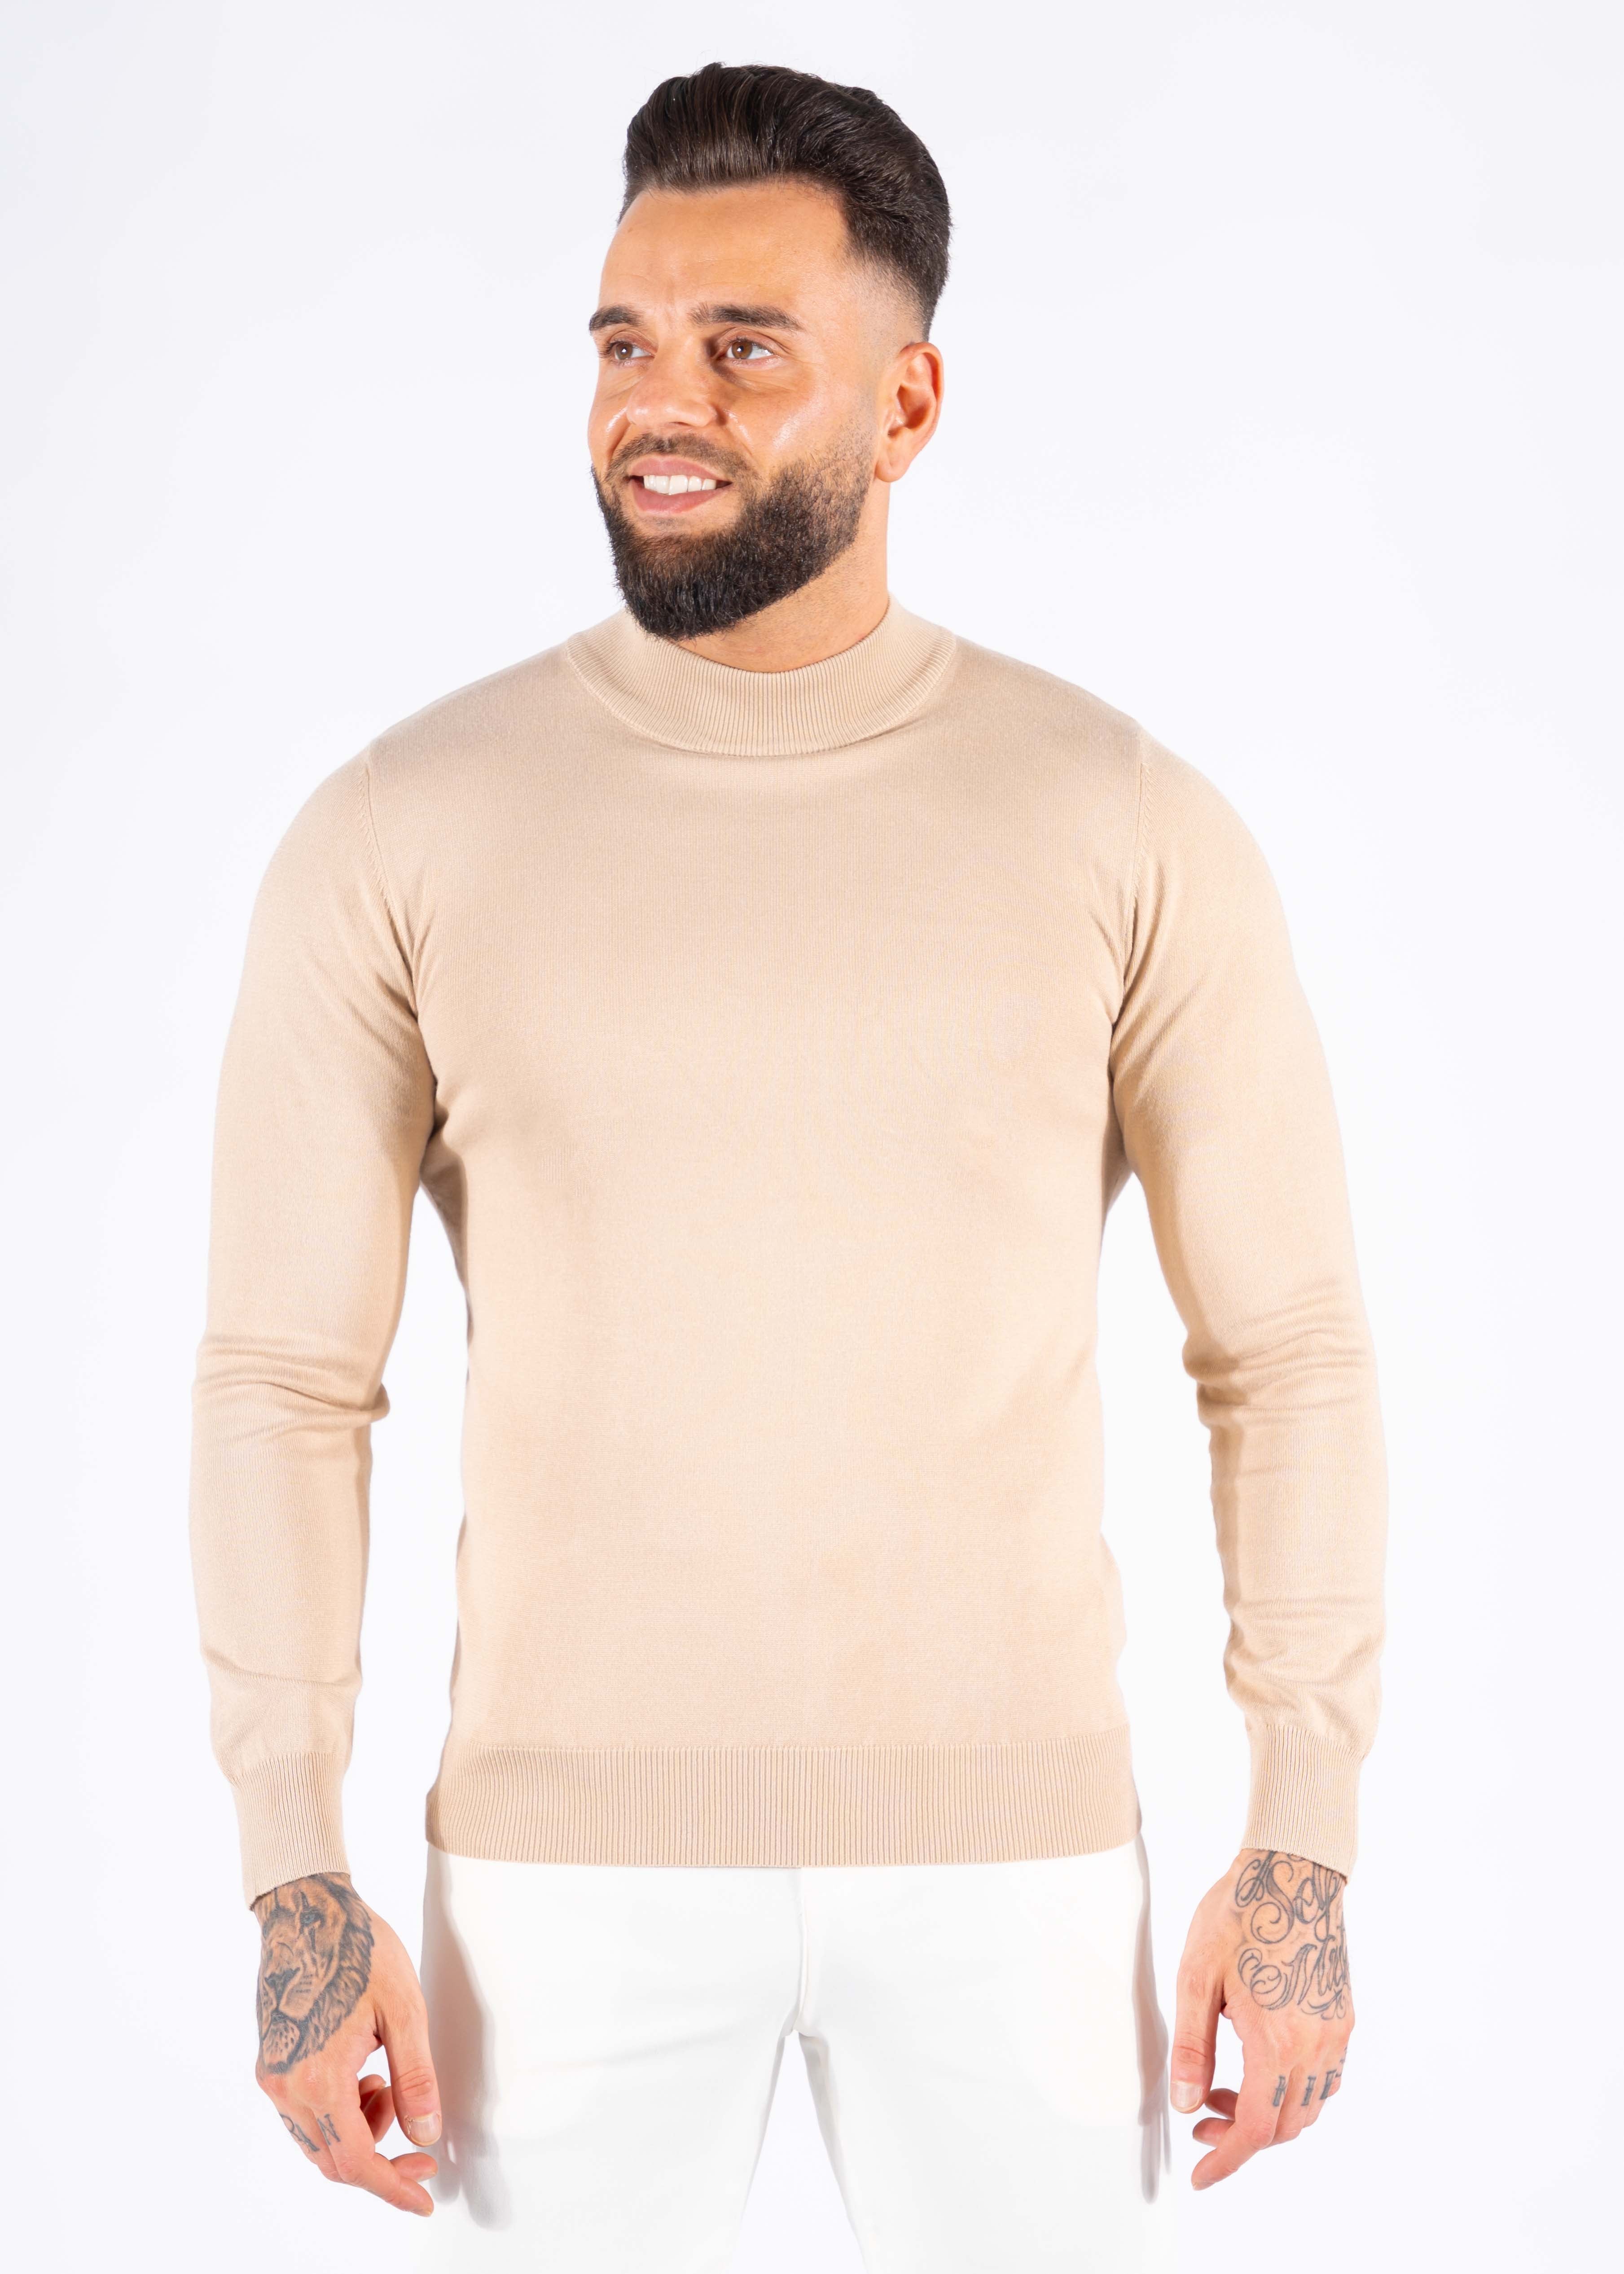 Turtleneck knitwear long sleeve beige